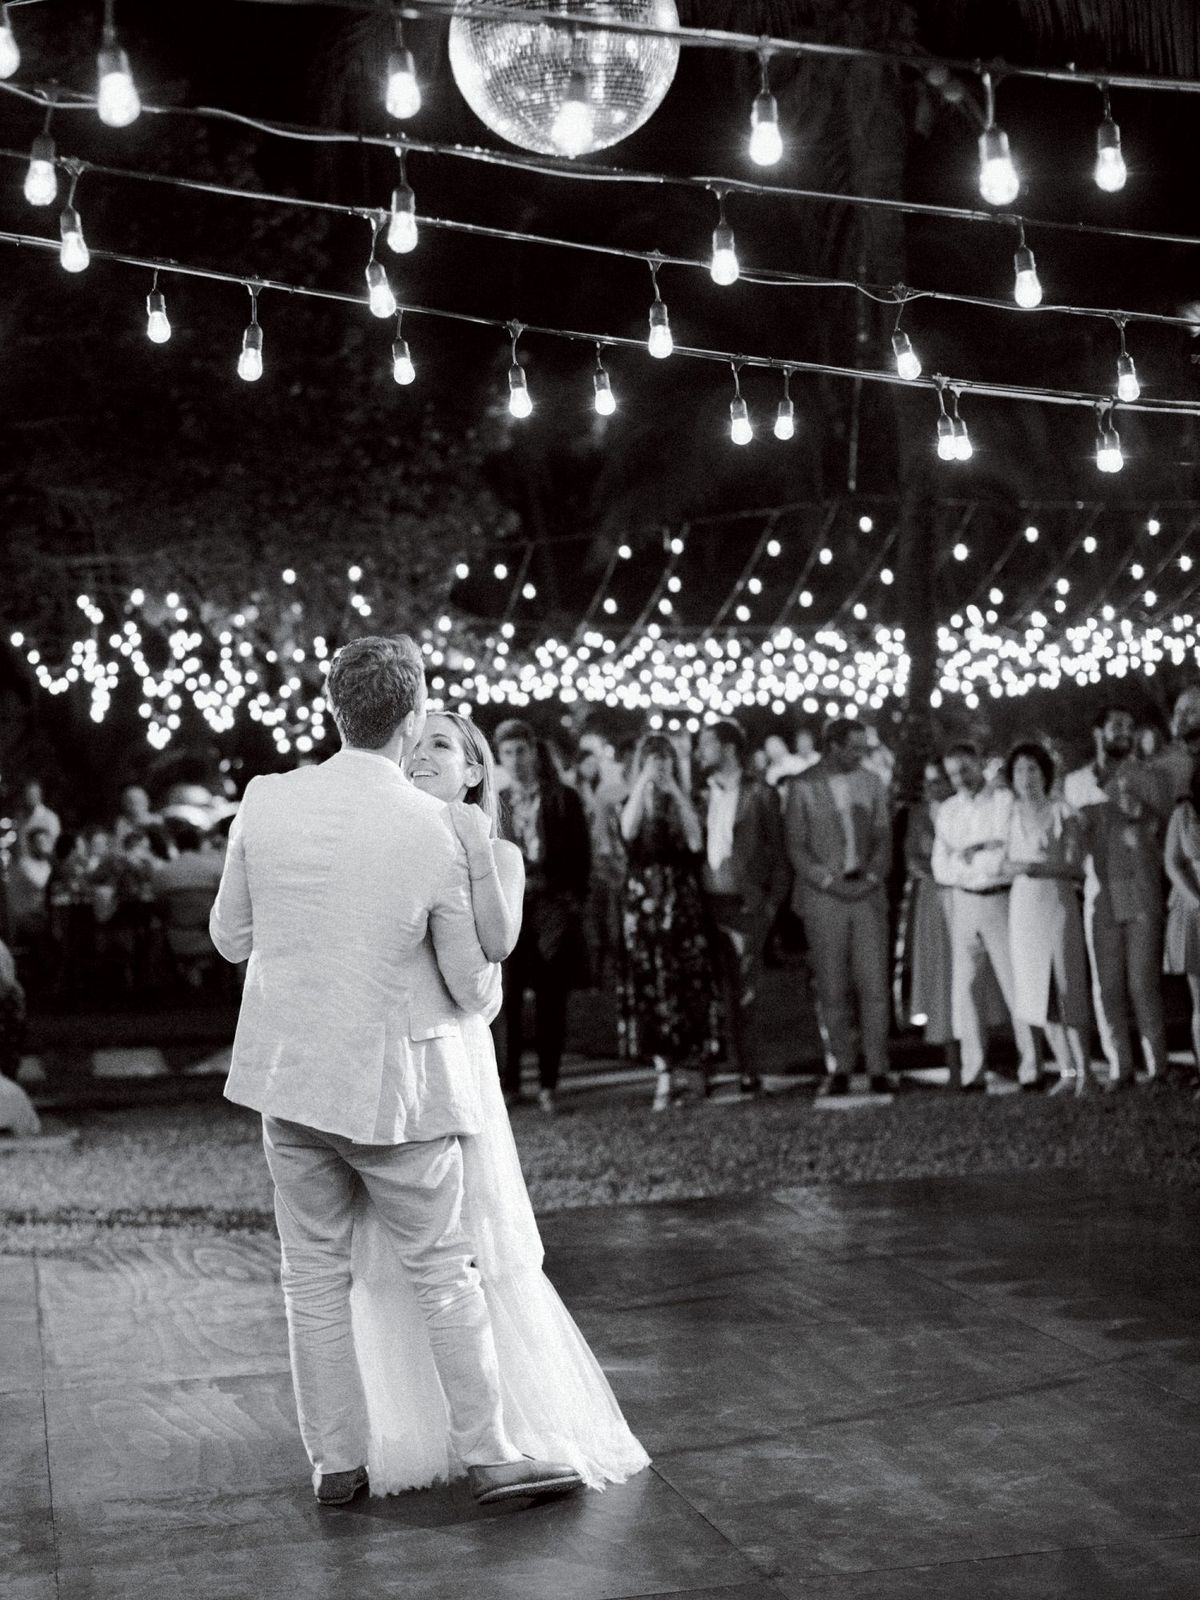 ariel trevor vjenčanje tulum meksiko prvi plesni par nevjesta grupa svjetla